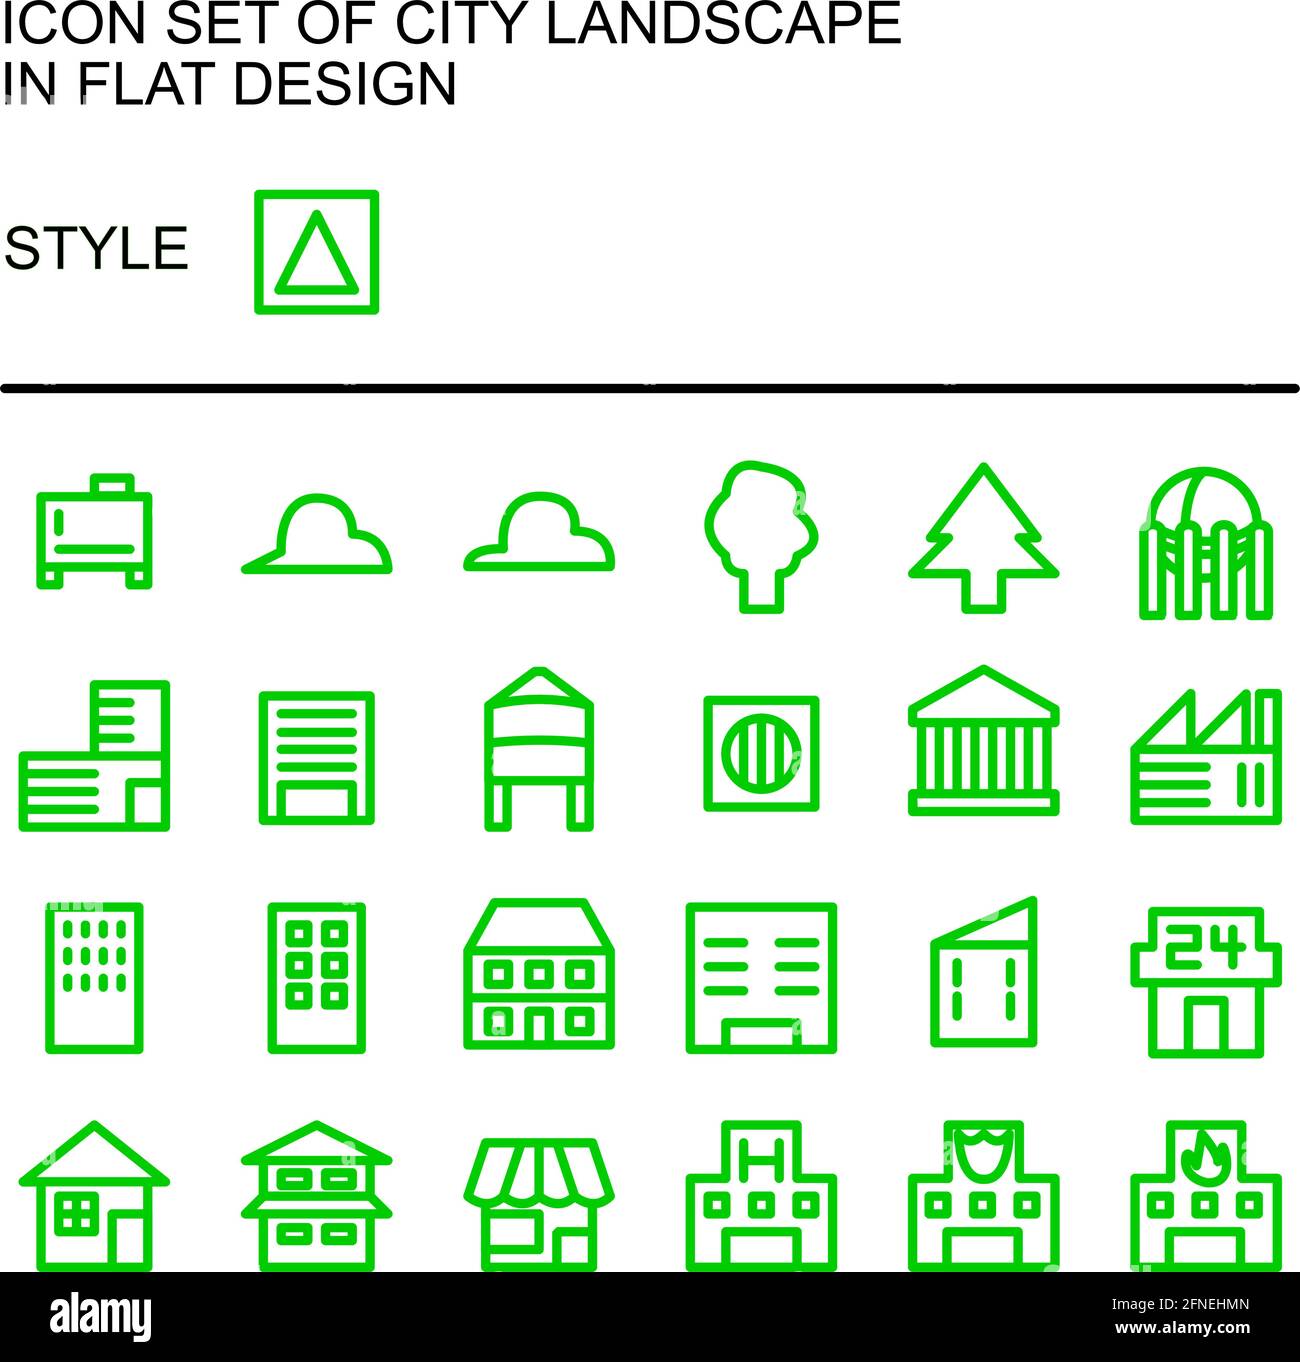 Symbol für die Stadtlandschaft in flachem Design mit grünen Linien und weißen Füllungen. Stock Vektor